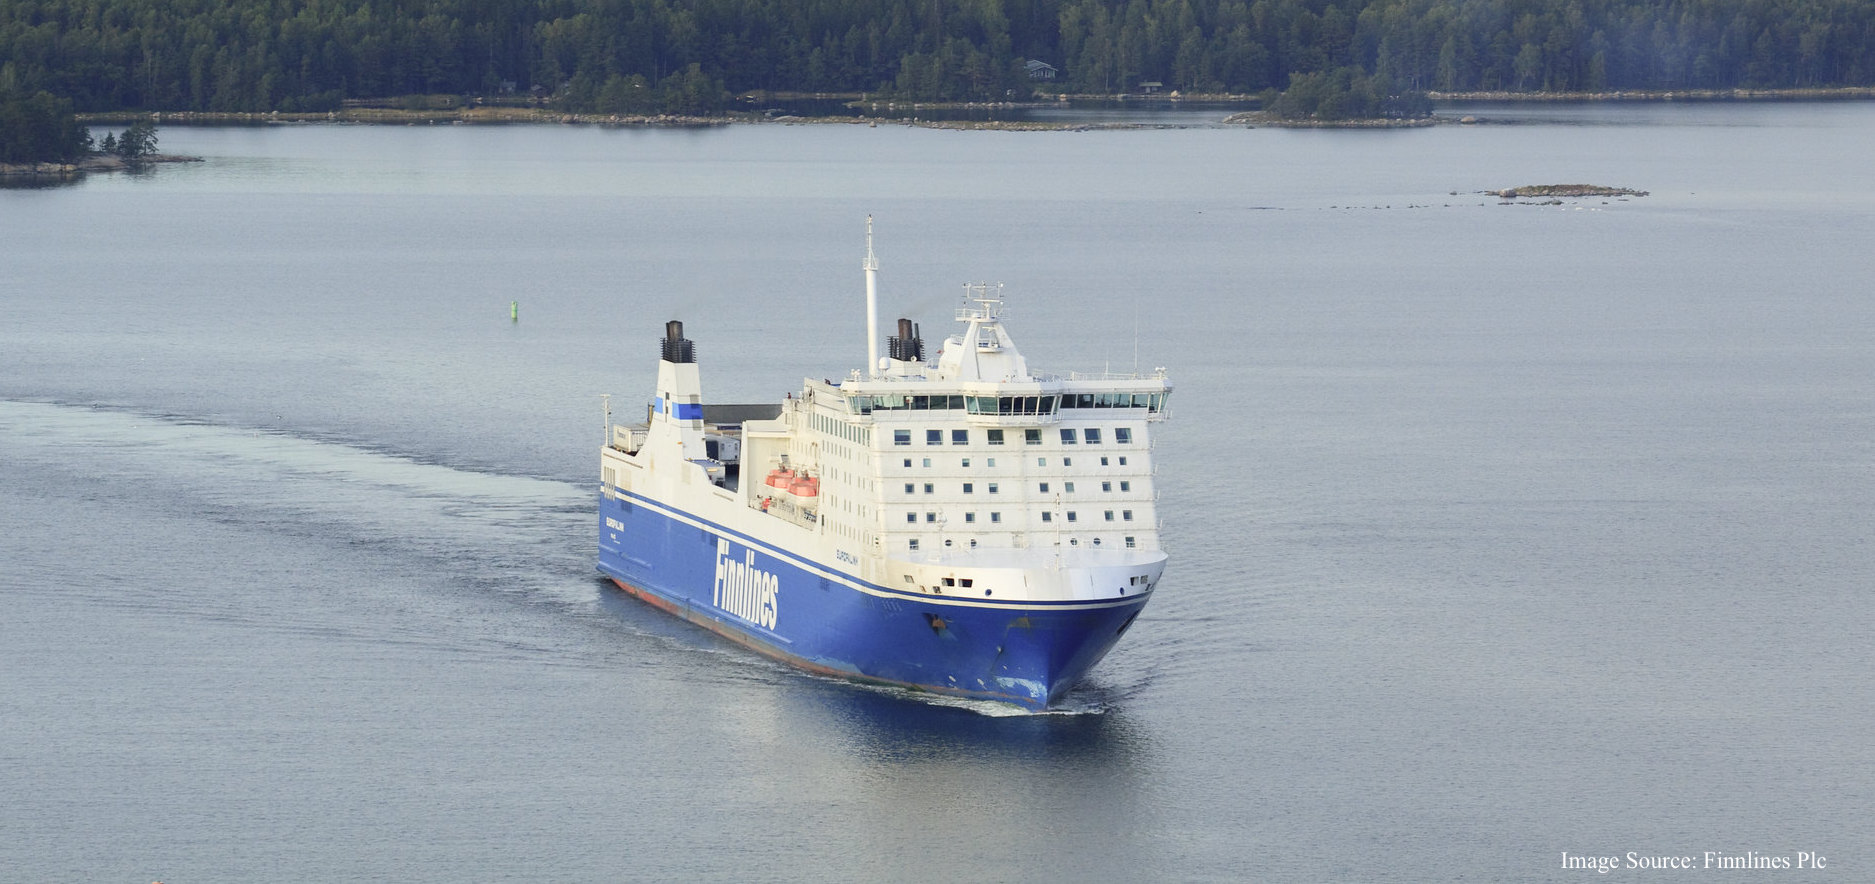 Kuva Finnlines - Europalink aluksesta